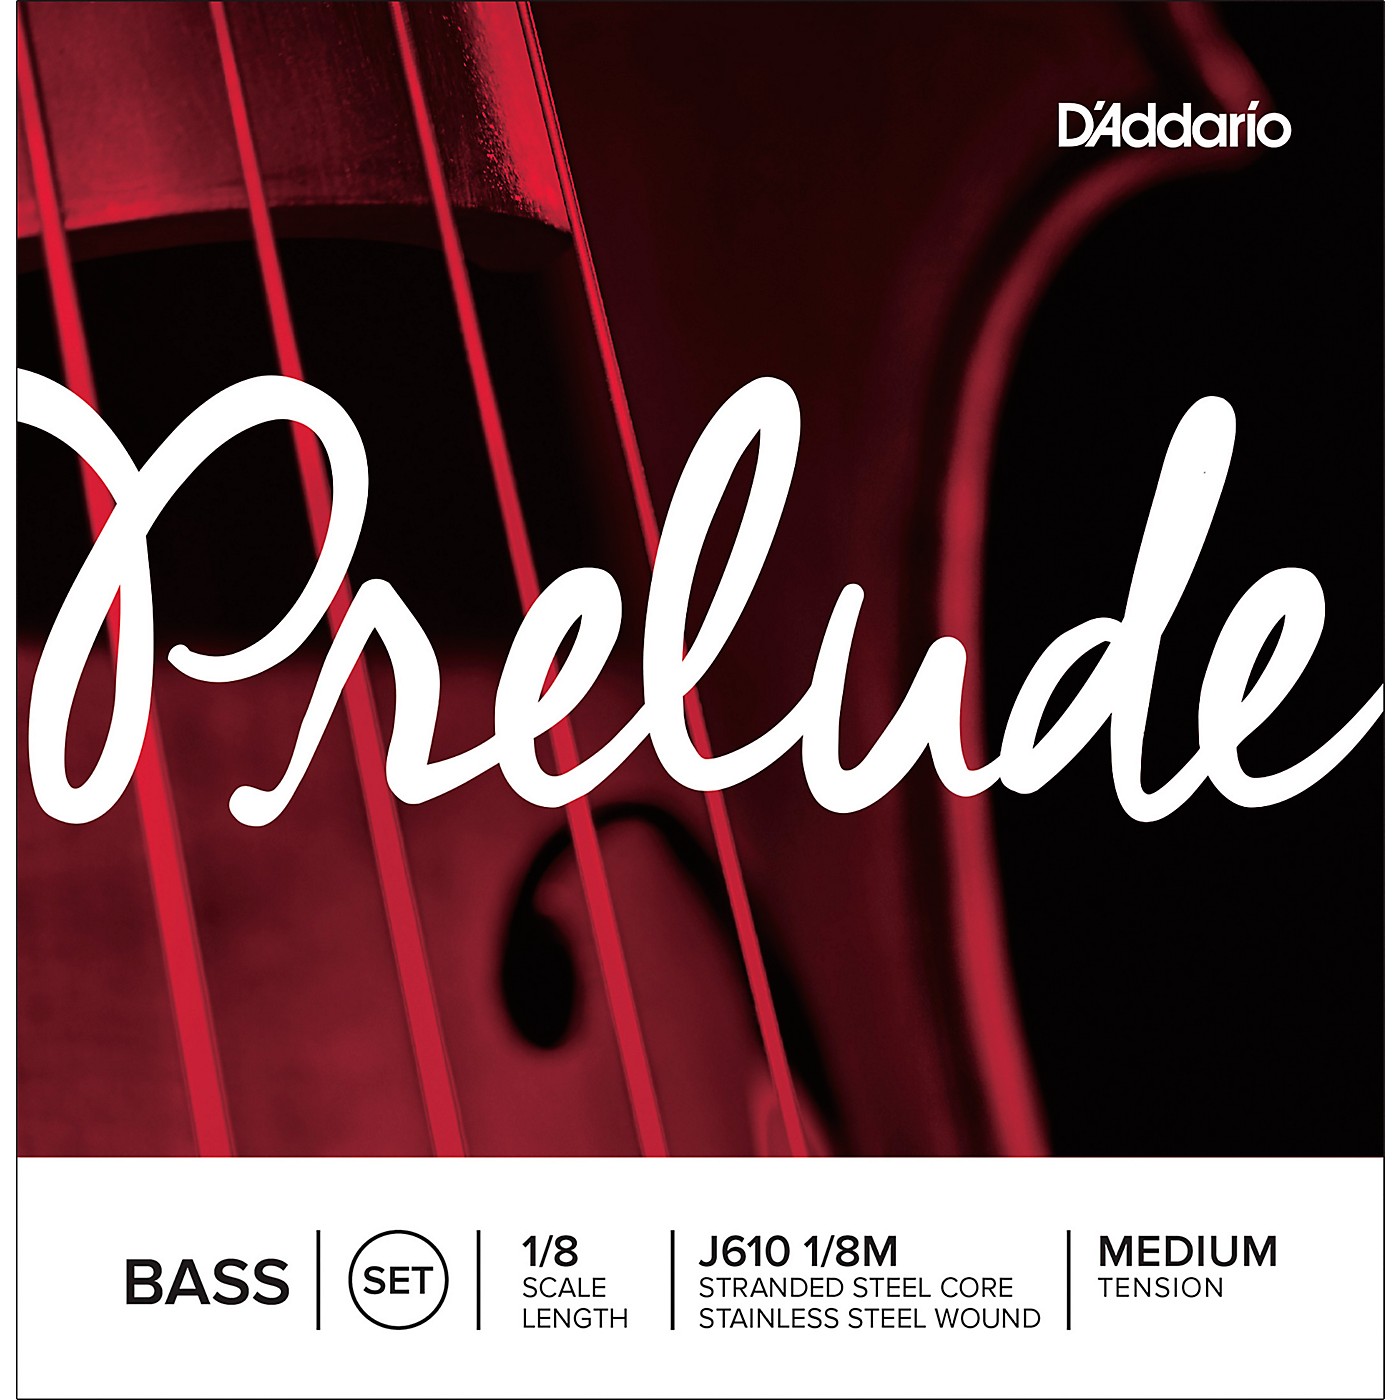 D'Addario Prelude Series Double Bass String Set thumbnail